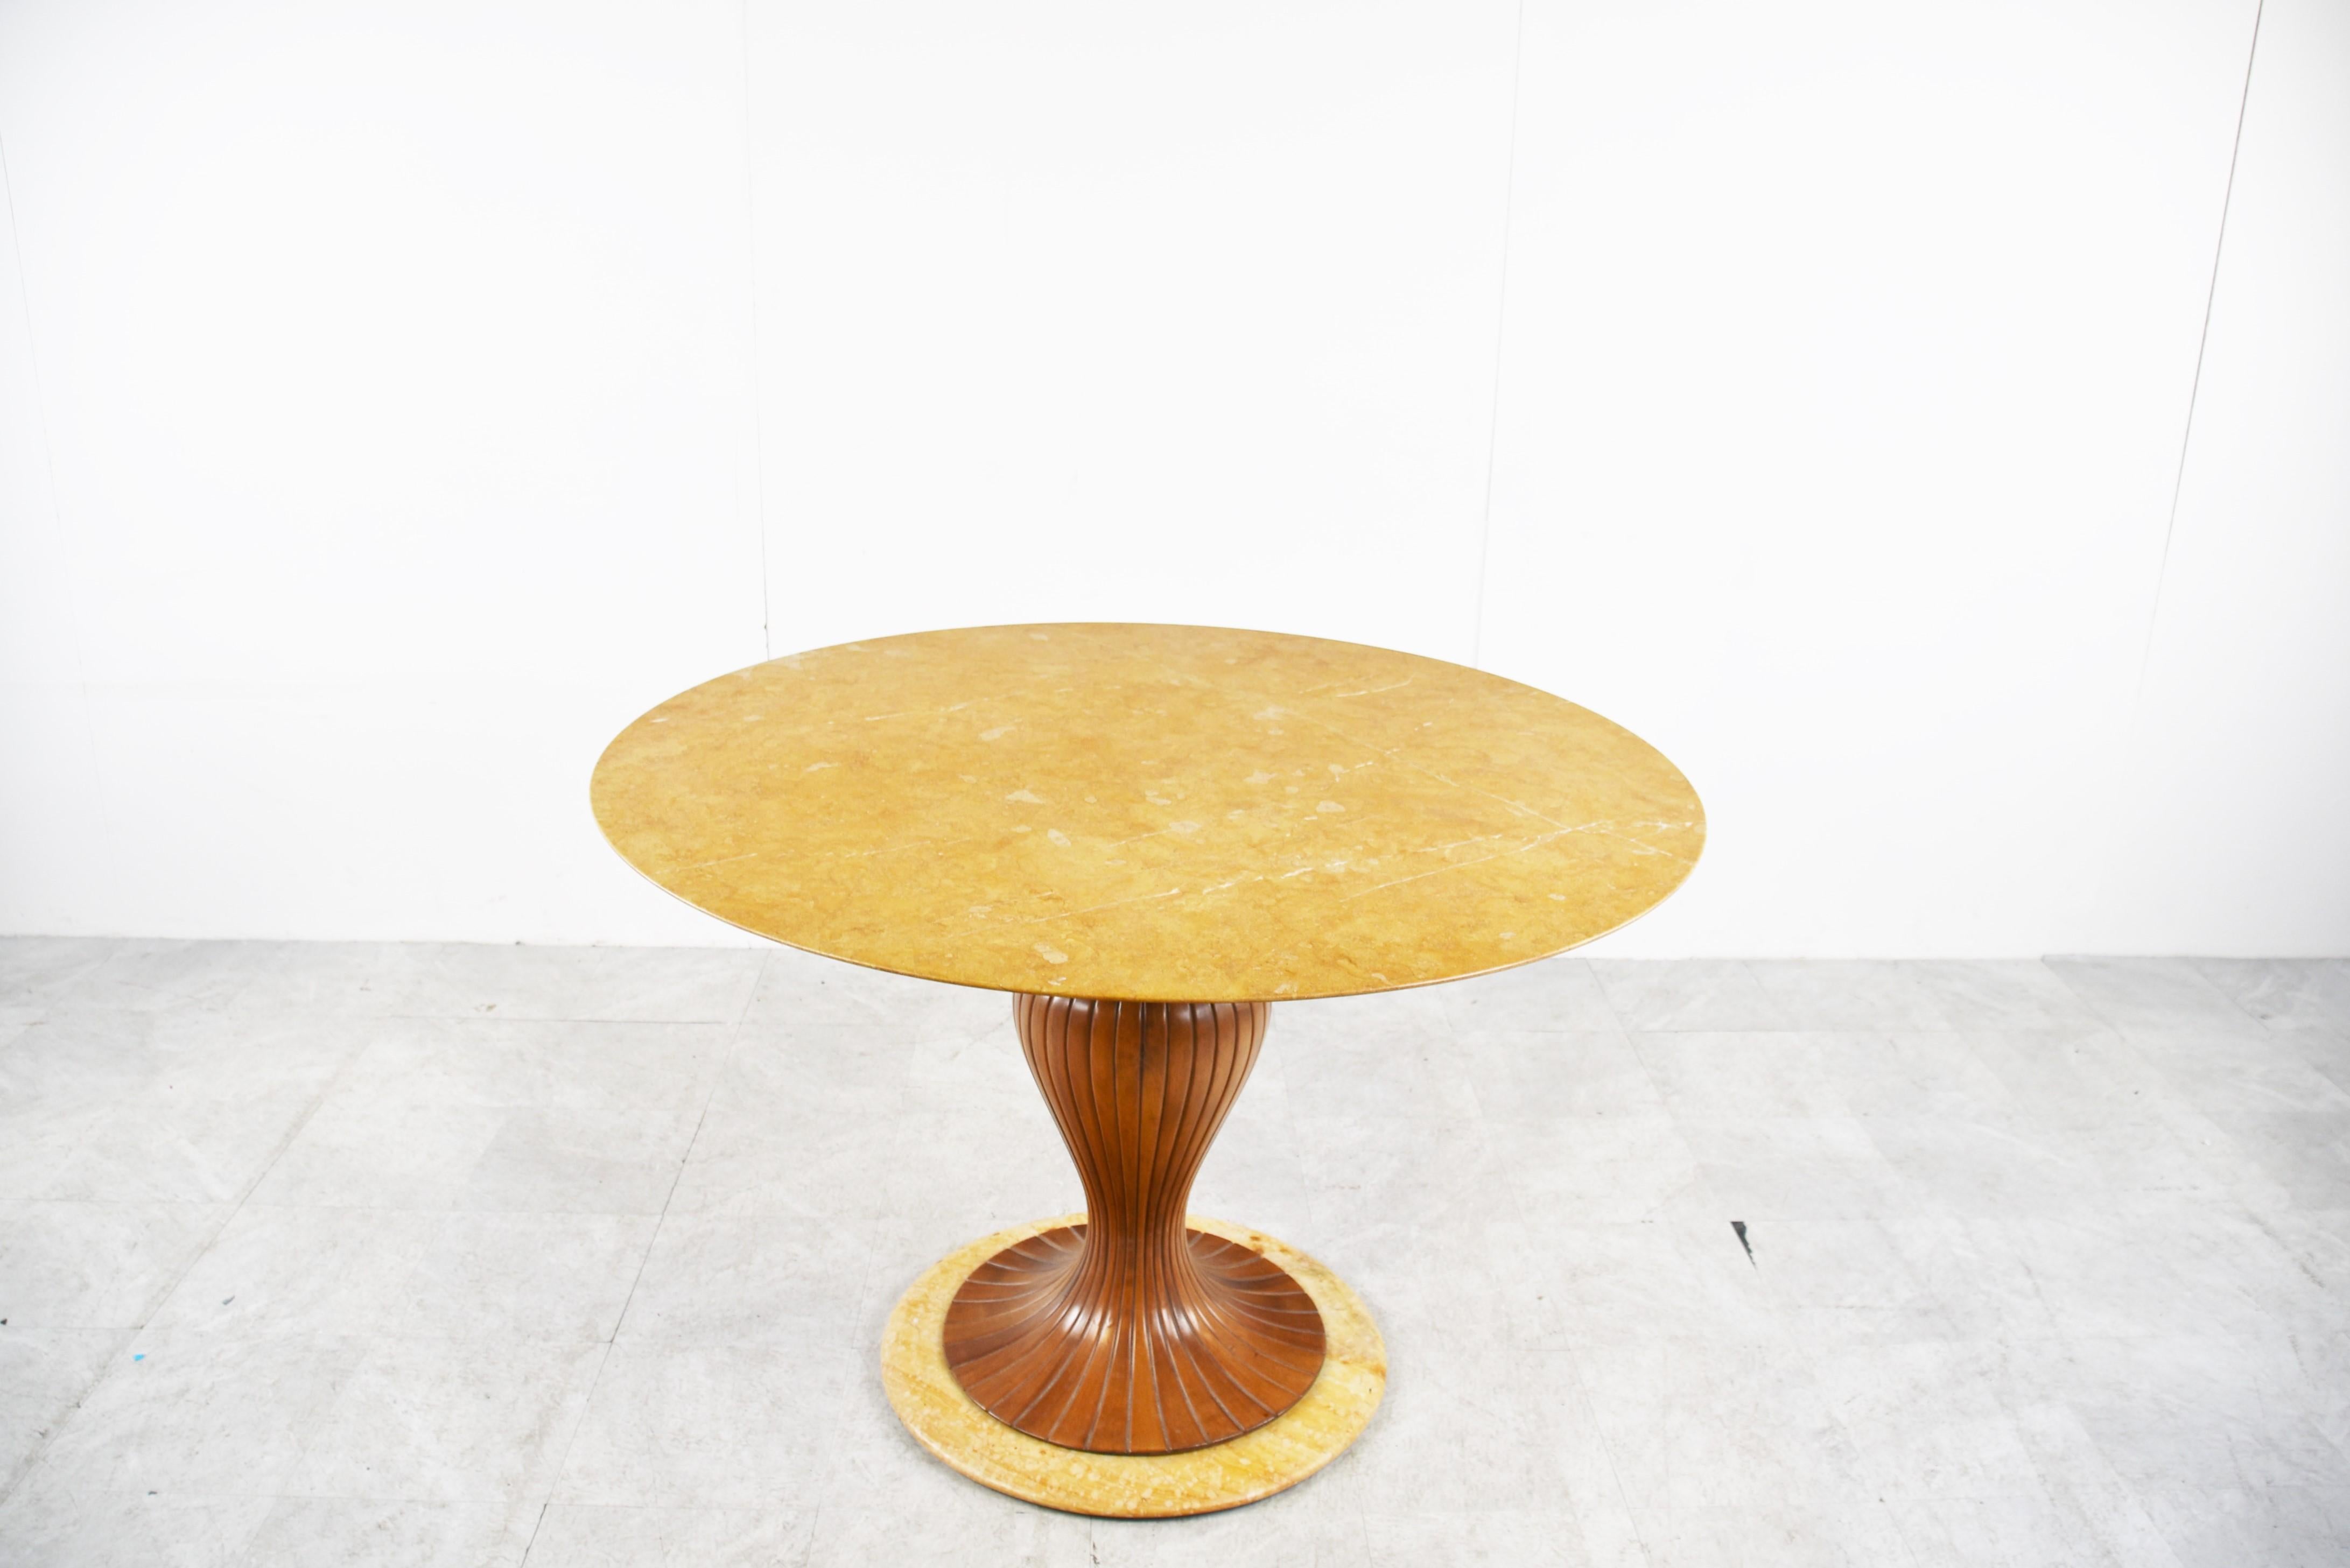 Remarquable table de salle à manger du milieu du siècle dernier conçue par Vittorio Dassi, avec un magnifique plateau en onyx jaune et une base constituée d'une fantastique pièce en bois d'acajou sculpté et d'un pied en onyx.

Une table très